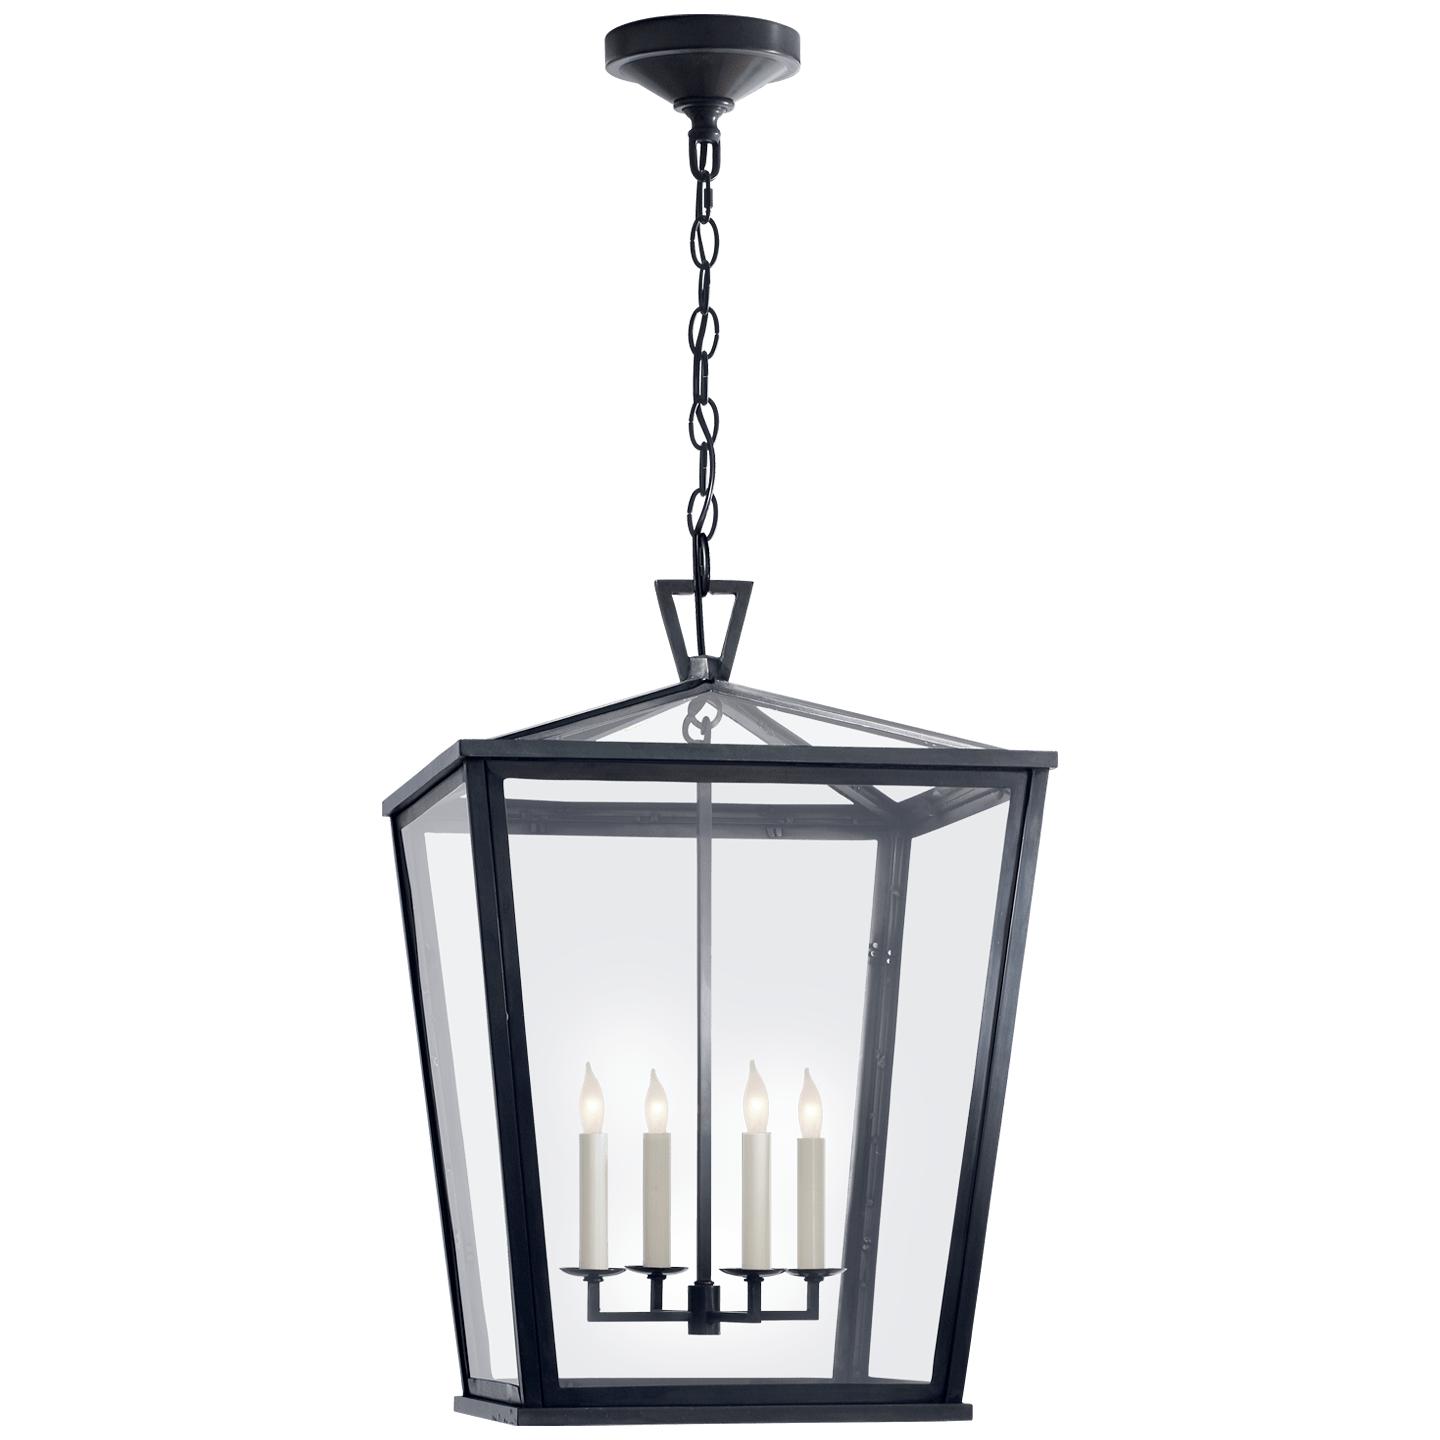 Купить Подвесной светильник Darlana Medium Hanging Lantern в интернет-магазине roooms.ru